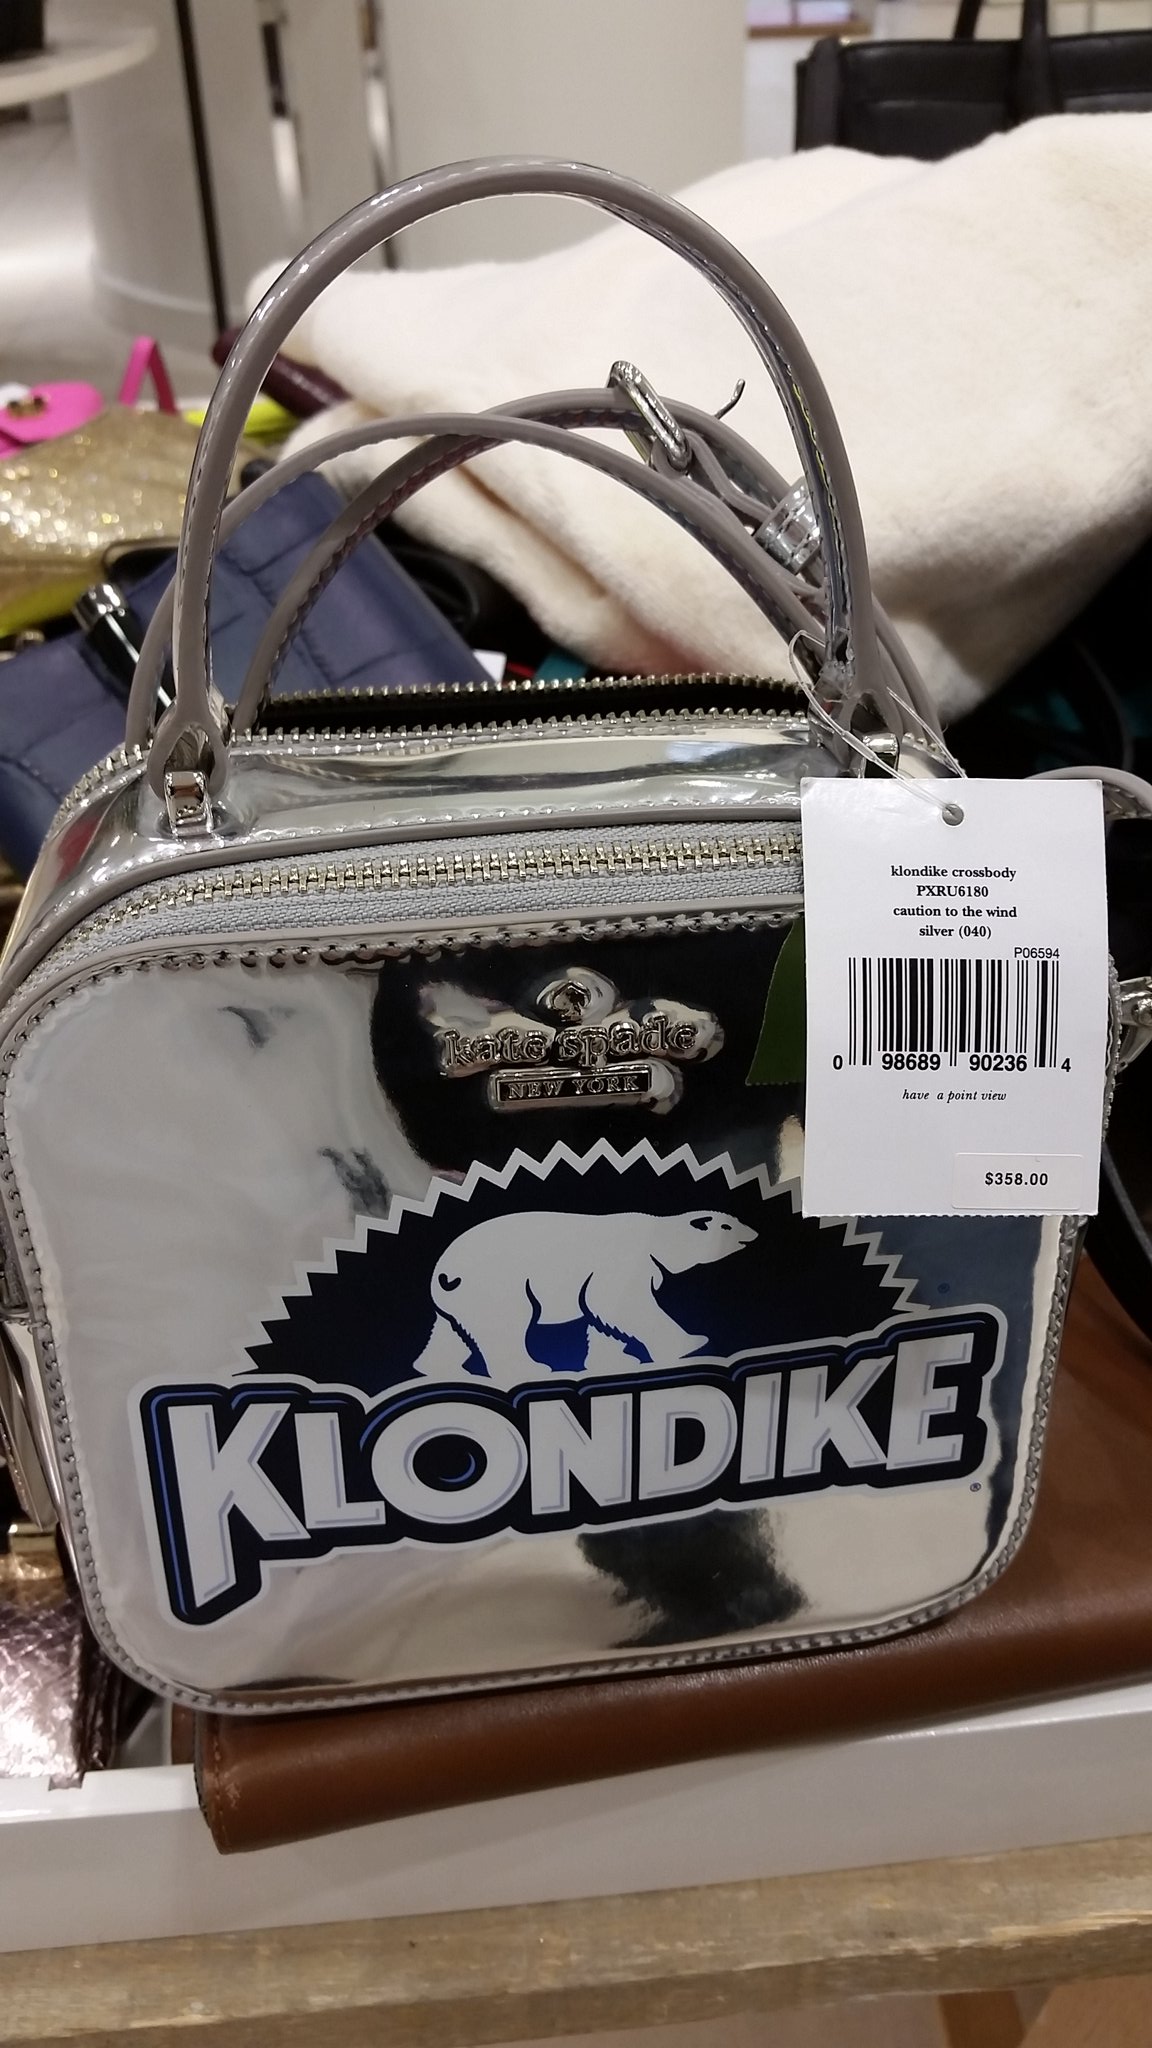 توییتر \ Evan! در توییتر: «What would you do for a Klondike Bag? Lol # klondike #bag #women #cash #why #jeez #katespade #icecream #notreally  /0S8wElHKeM»